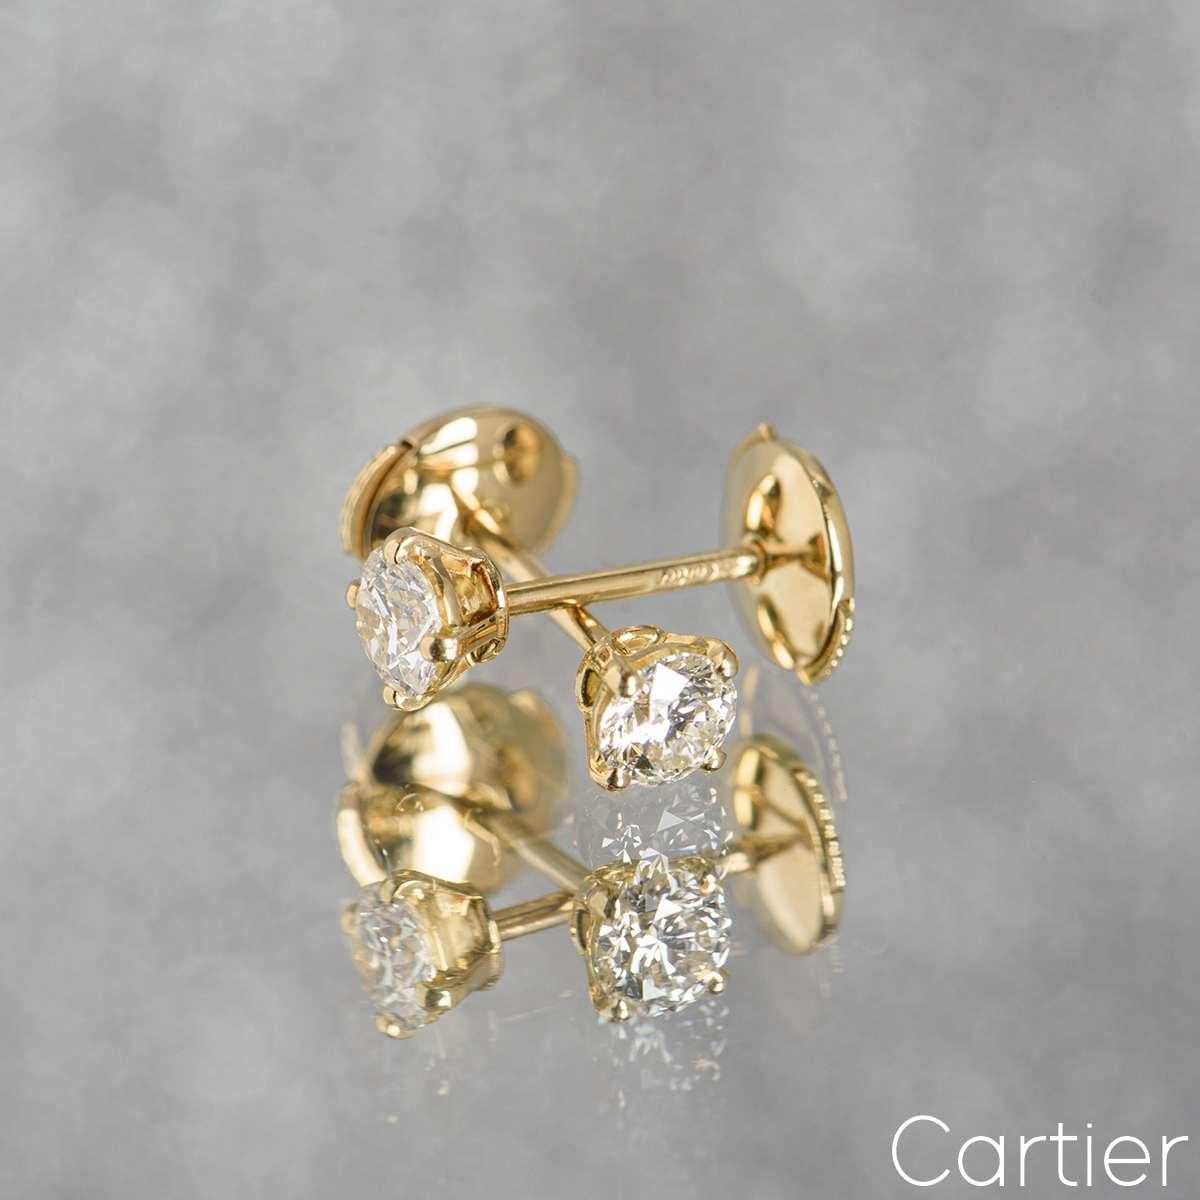 Women's Cartier Yellow Gold Diamond Stud Earrings 0.46ct G/VVS1 GIA Certified